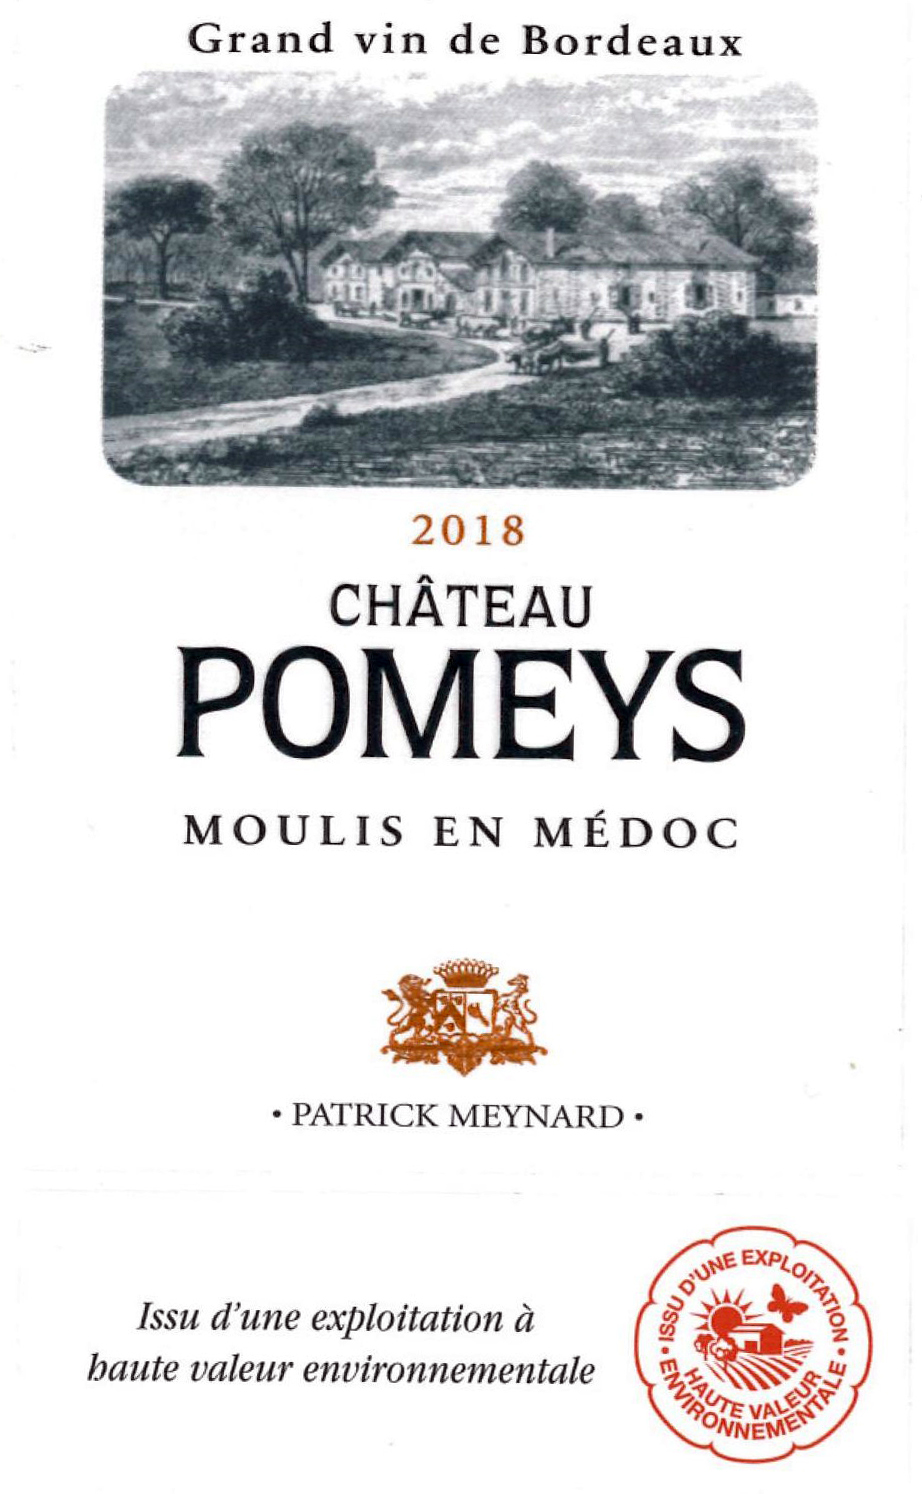 Château Pomeys AOC Moulis en Médoc Rouge 2018